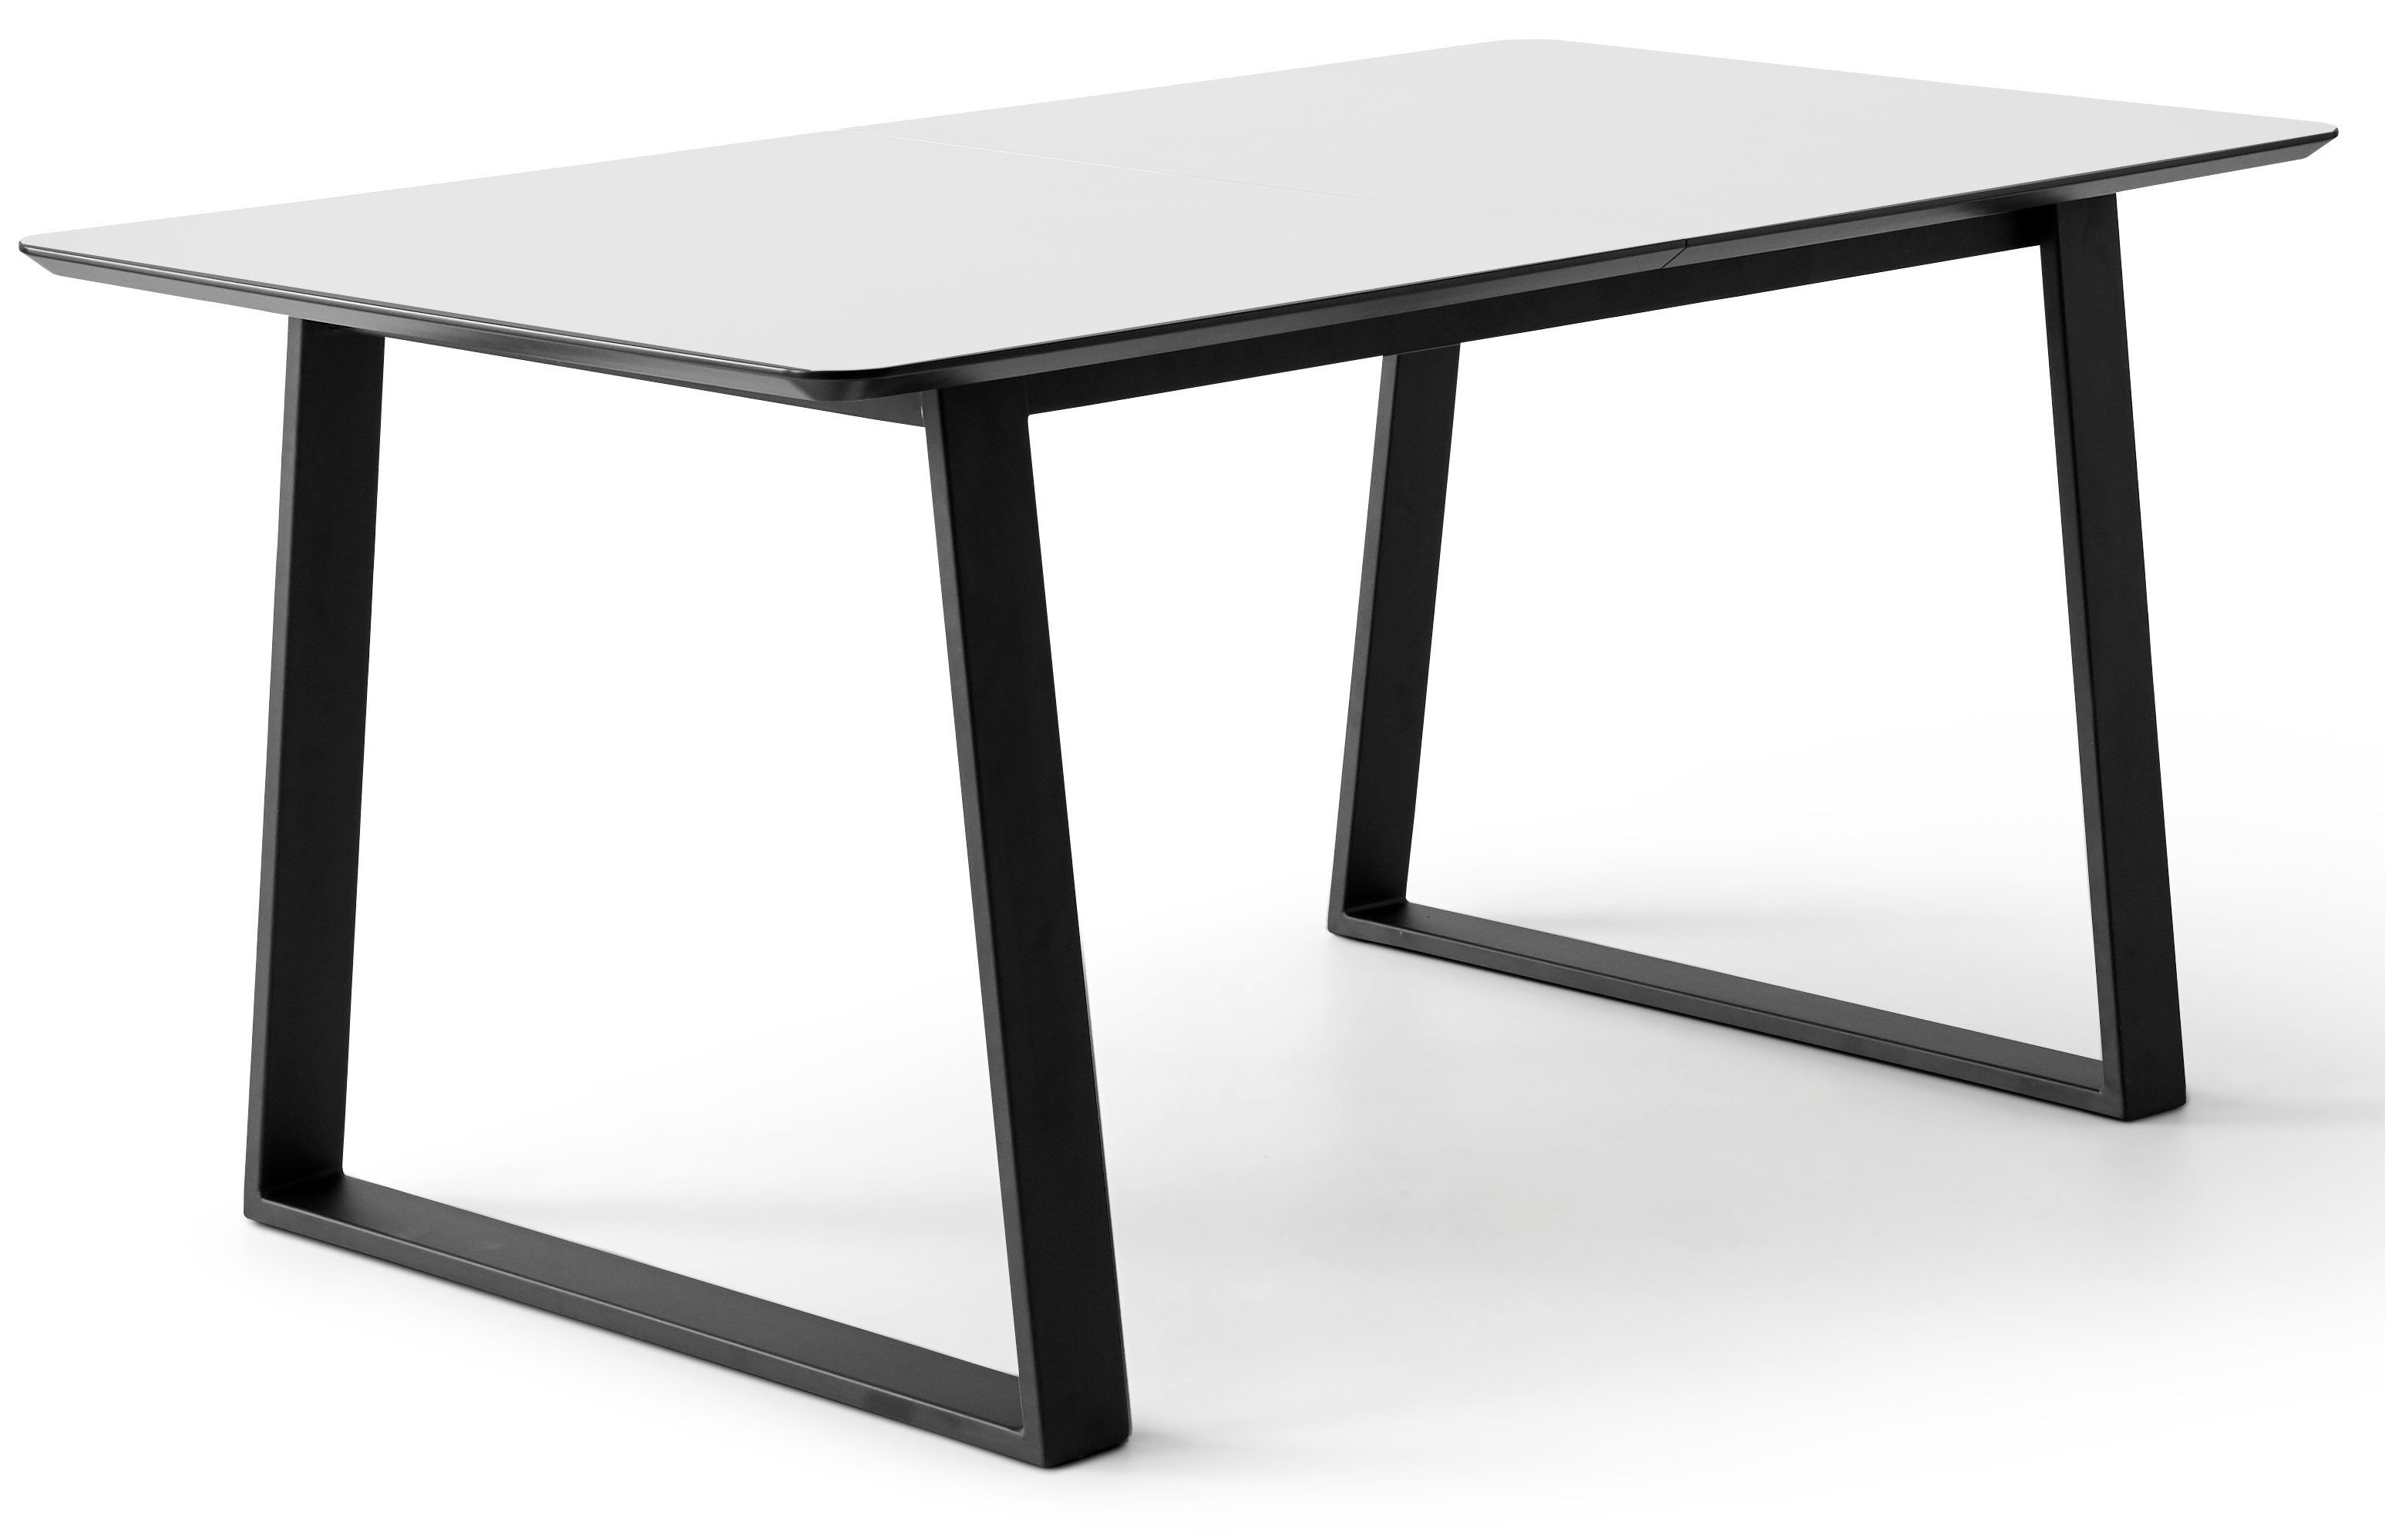 Hammel Furniture Einlegeplatten by Tischplatte 2 Trapez abgerundete MDF, Meza Metallgestell, Hammel, Esstisch Weiß